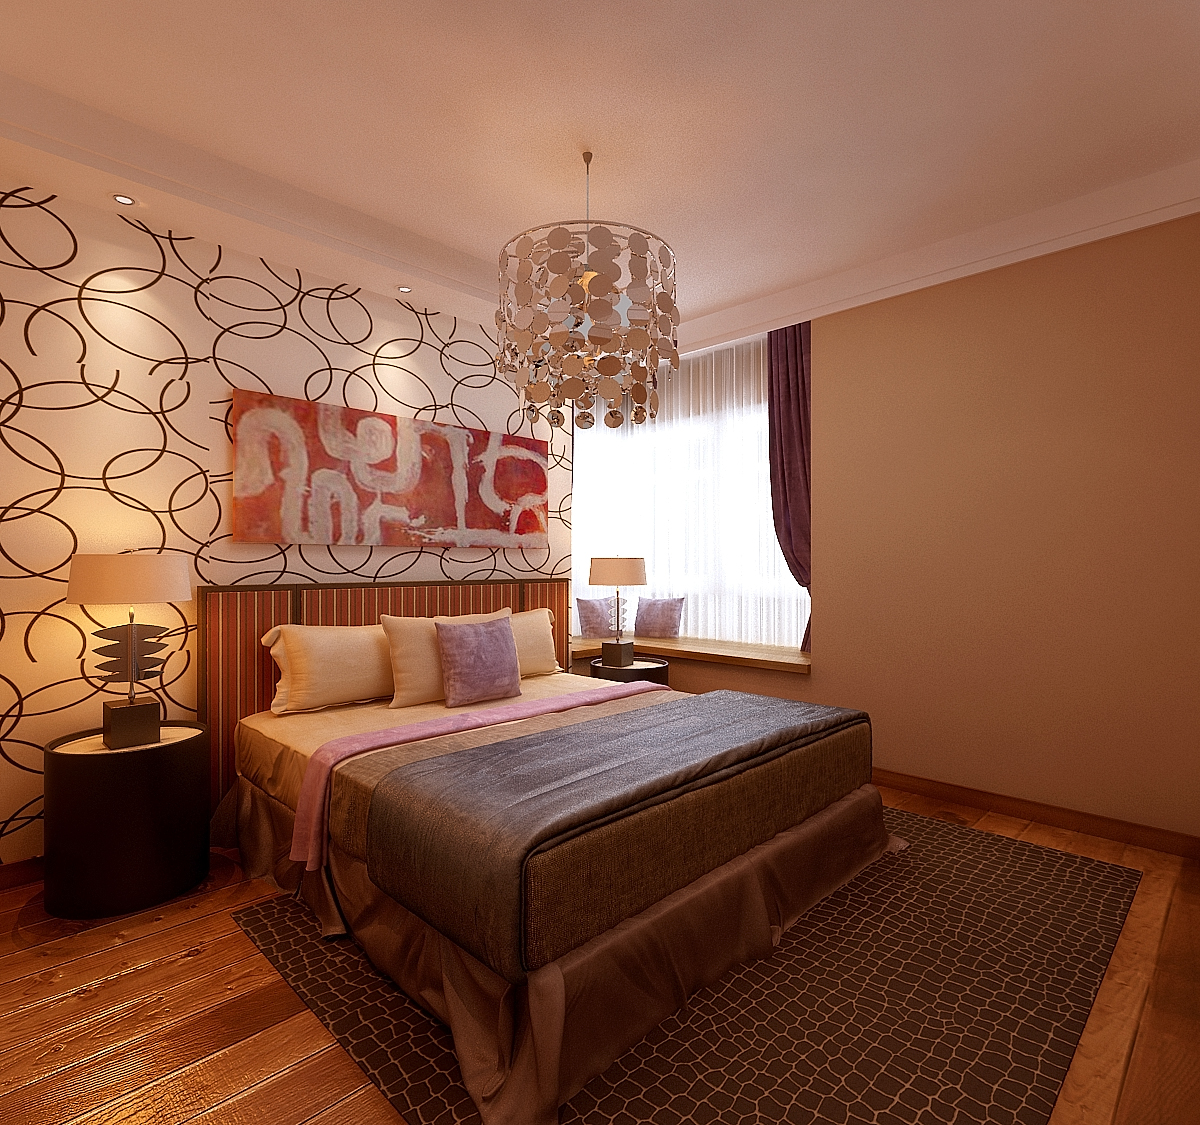 简约 欧式 二居 卧室图片来自华耐美家小帅在中铁国际城的分享